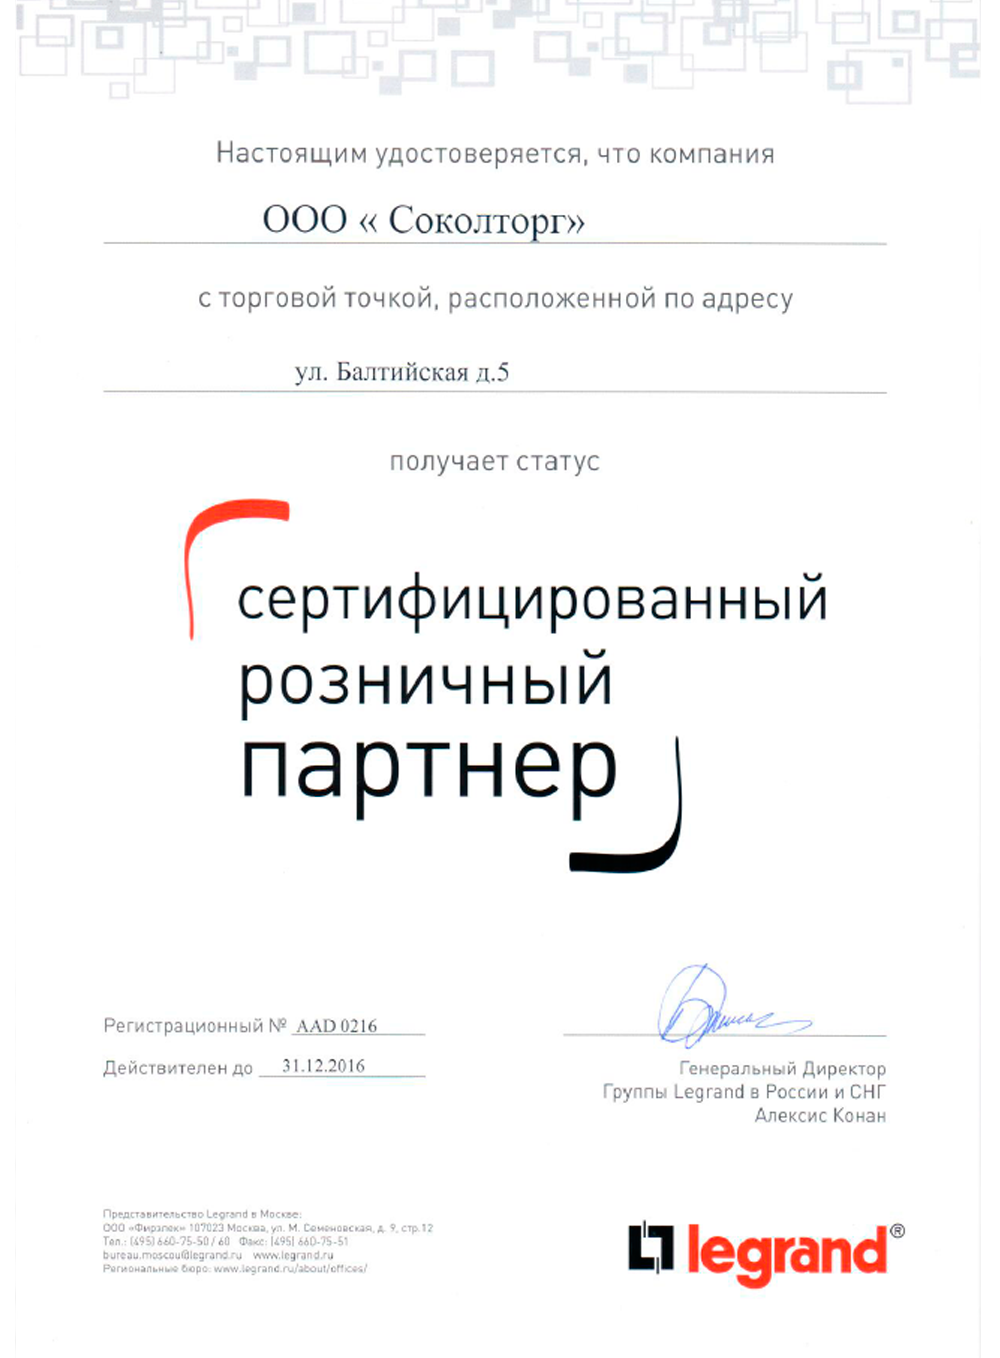 СИНЭЛ-Электрика, Официальный сертификат партнера на территории России